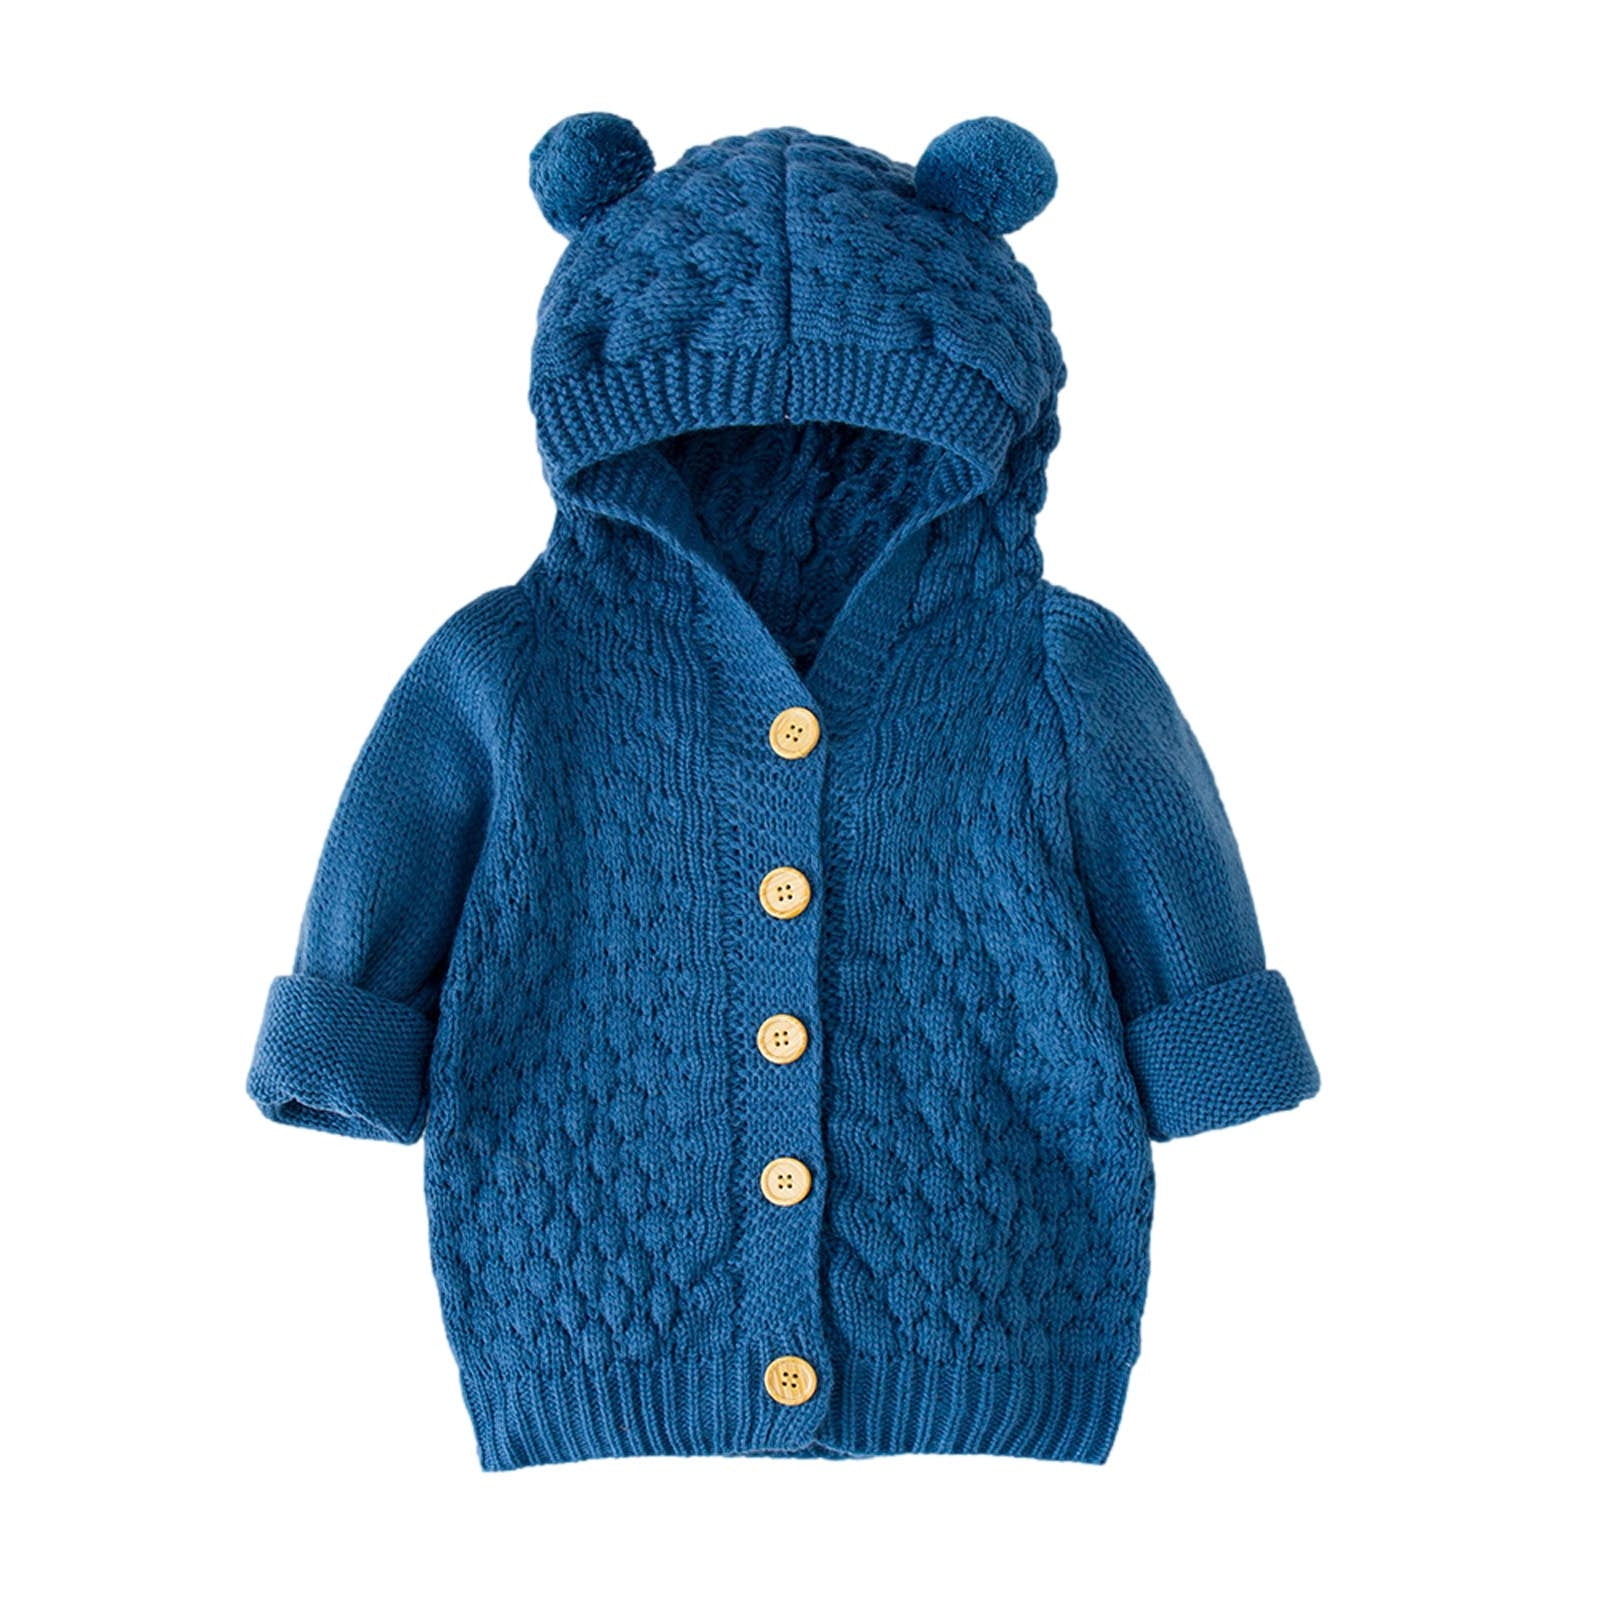 Newborn Infant Baby Girl Boy Winter Jacket Warm Coat Knit Outwear Hooded Sweater 